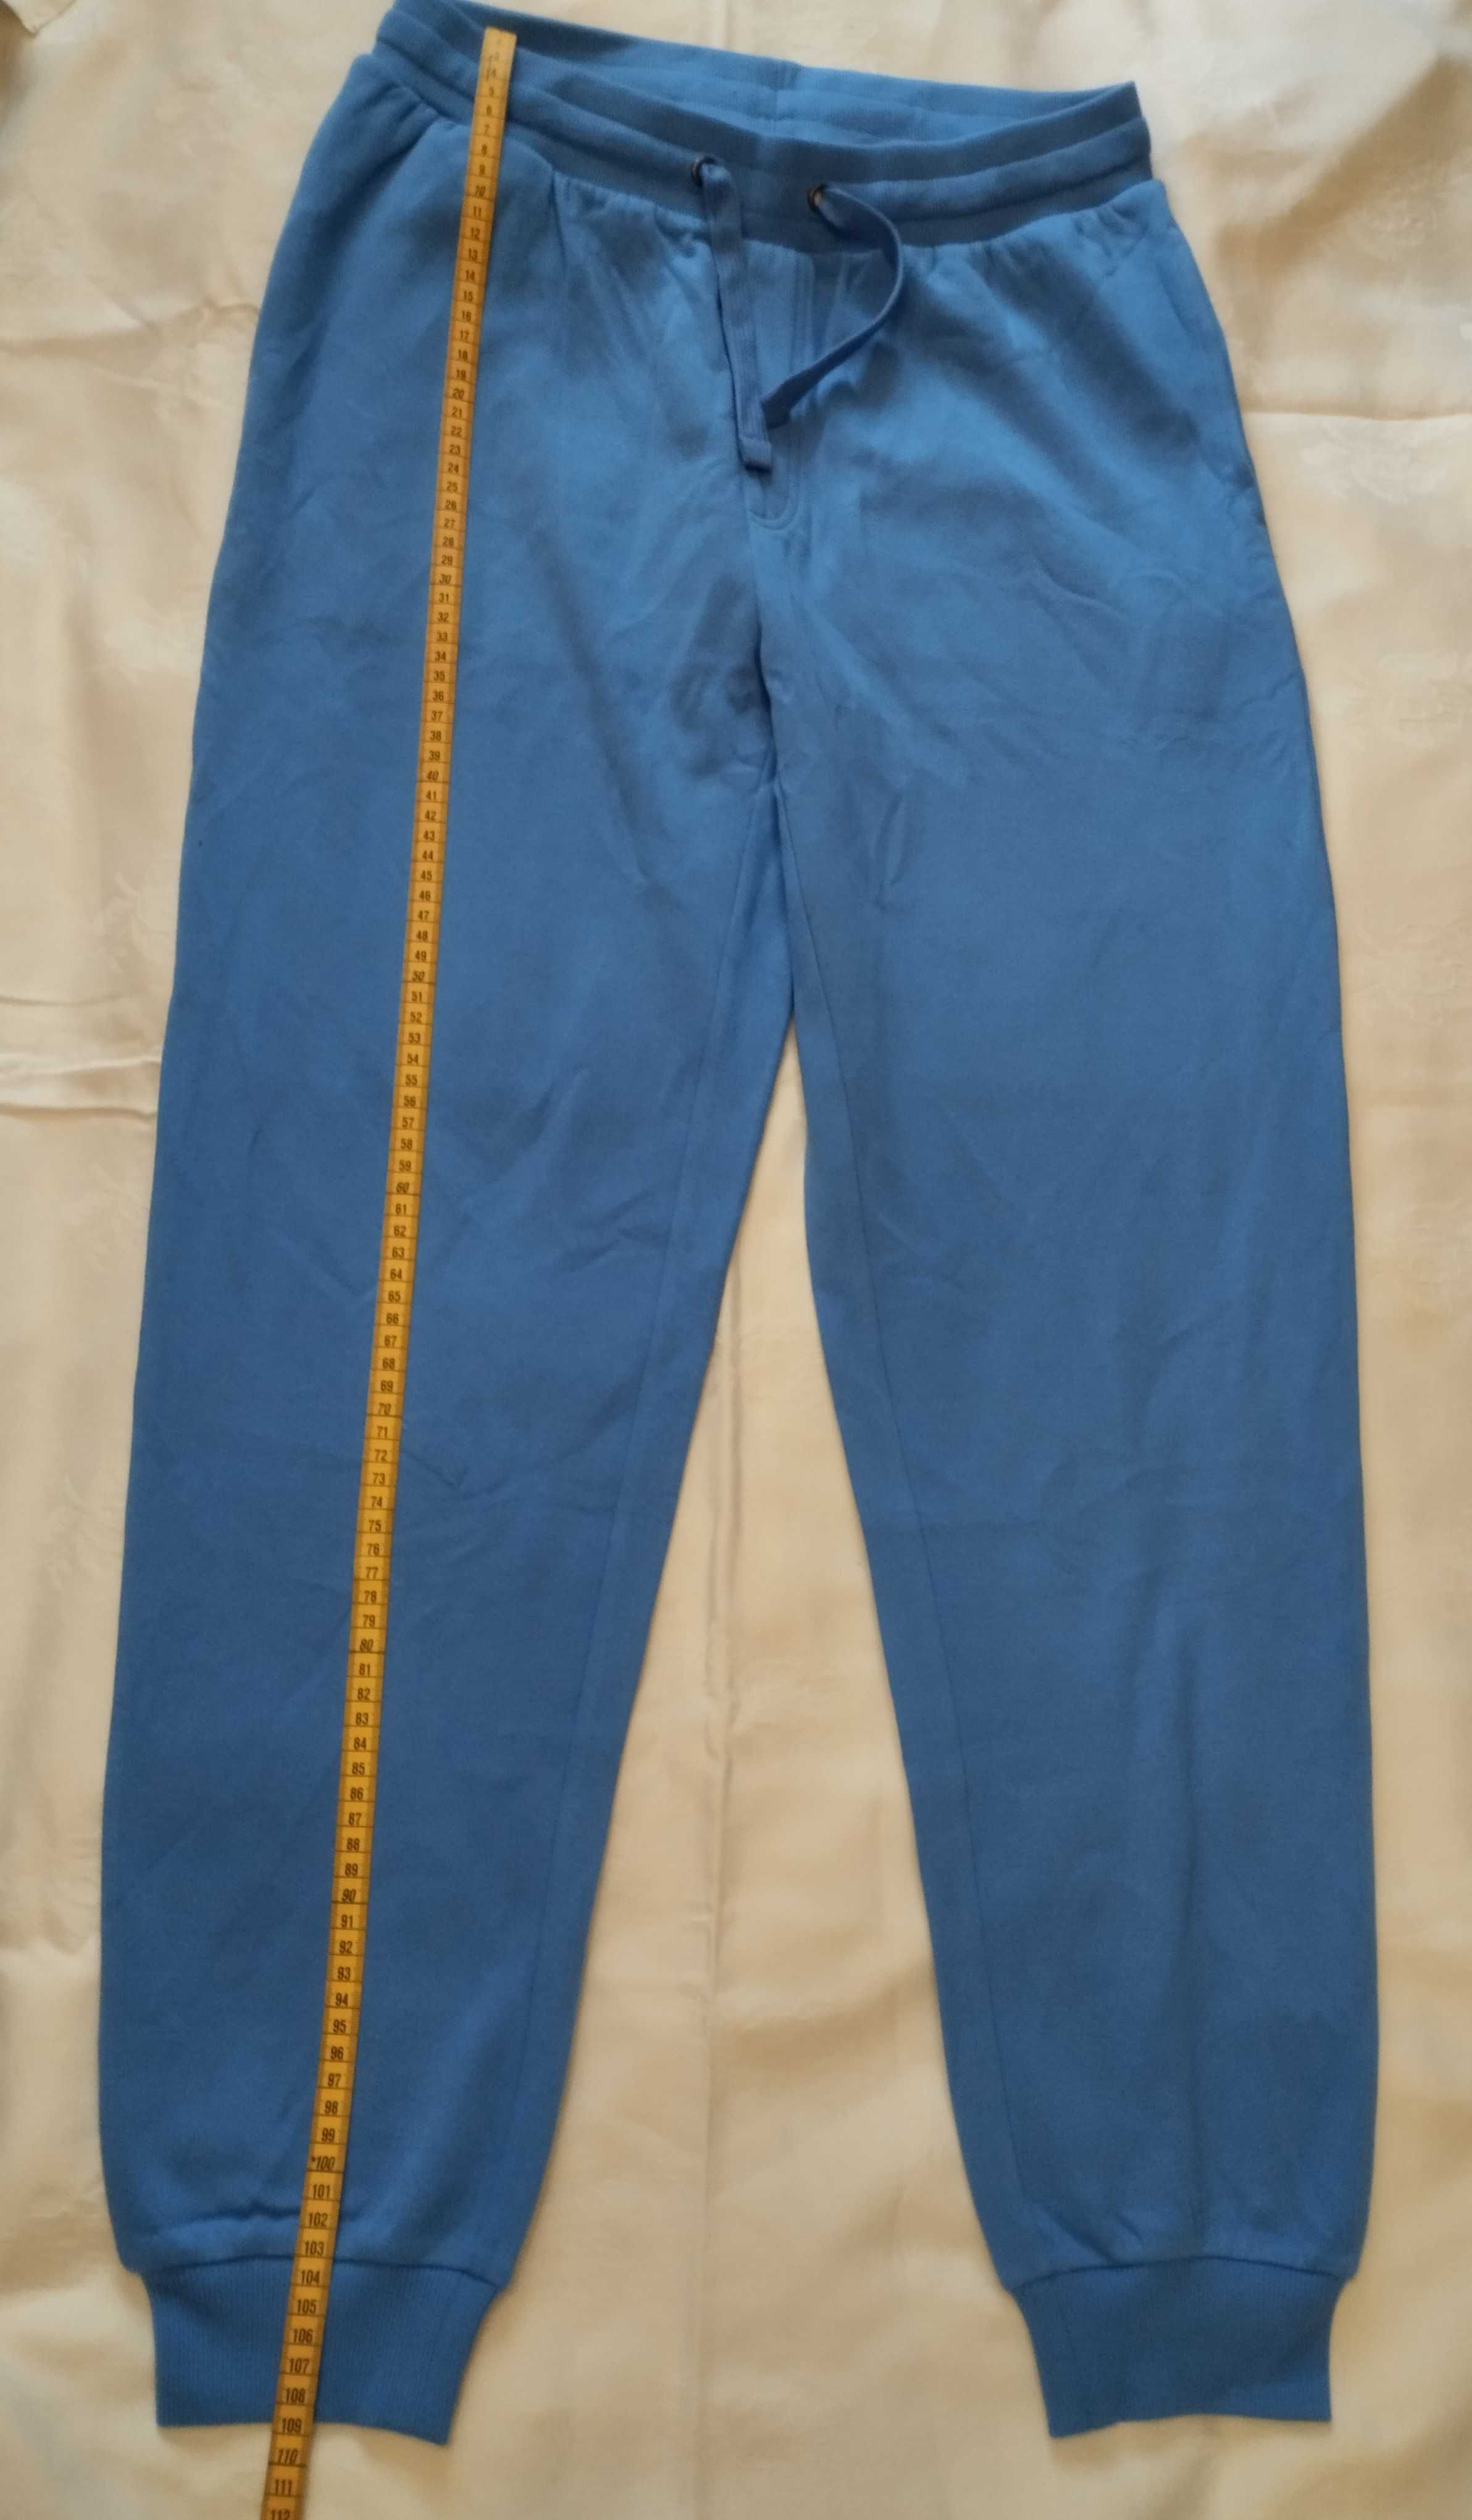 Bardzo ciepłe spodnie dresowe nowe niebieski rozmiar M 48/50 livergy